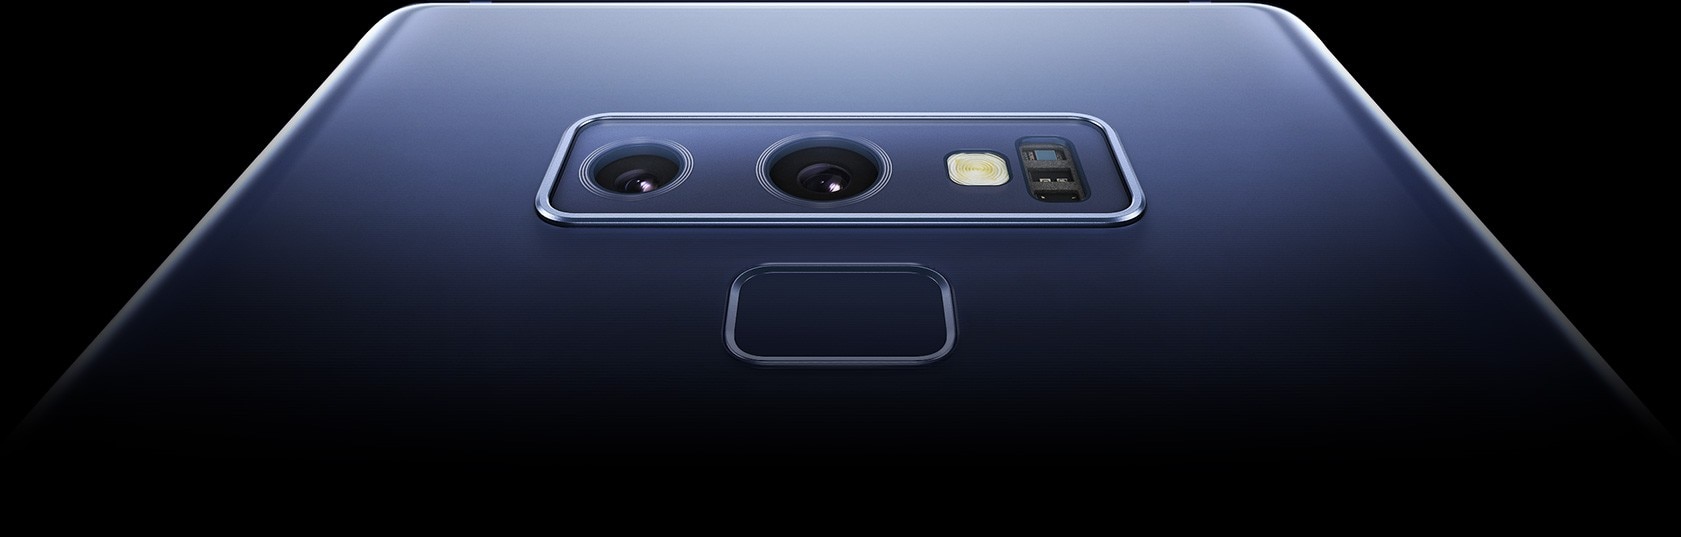 Primissimo piano della fotocamera posteriore a lente duale del Galaxy Note9 e dello scanner per impronte digitali